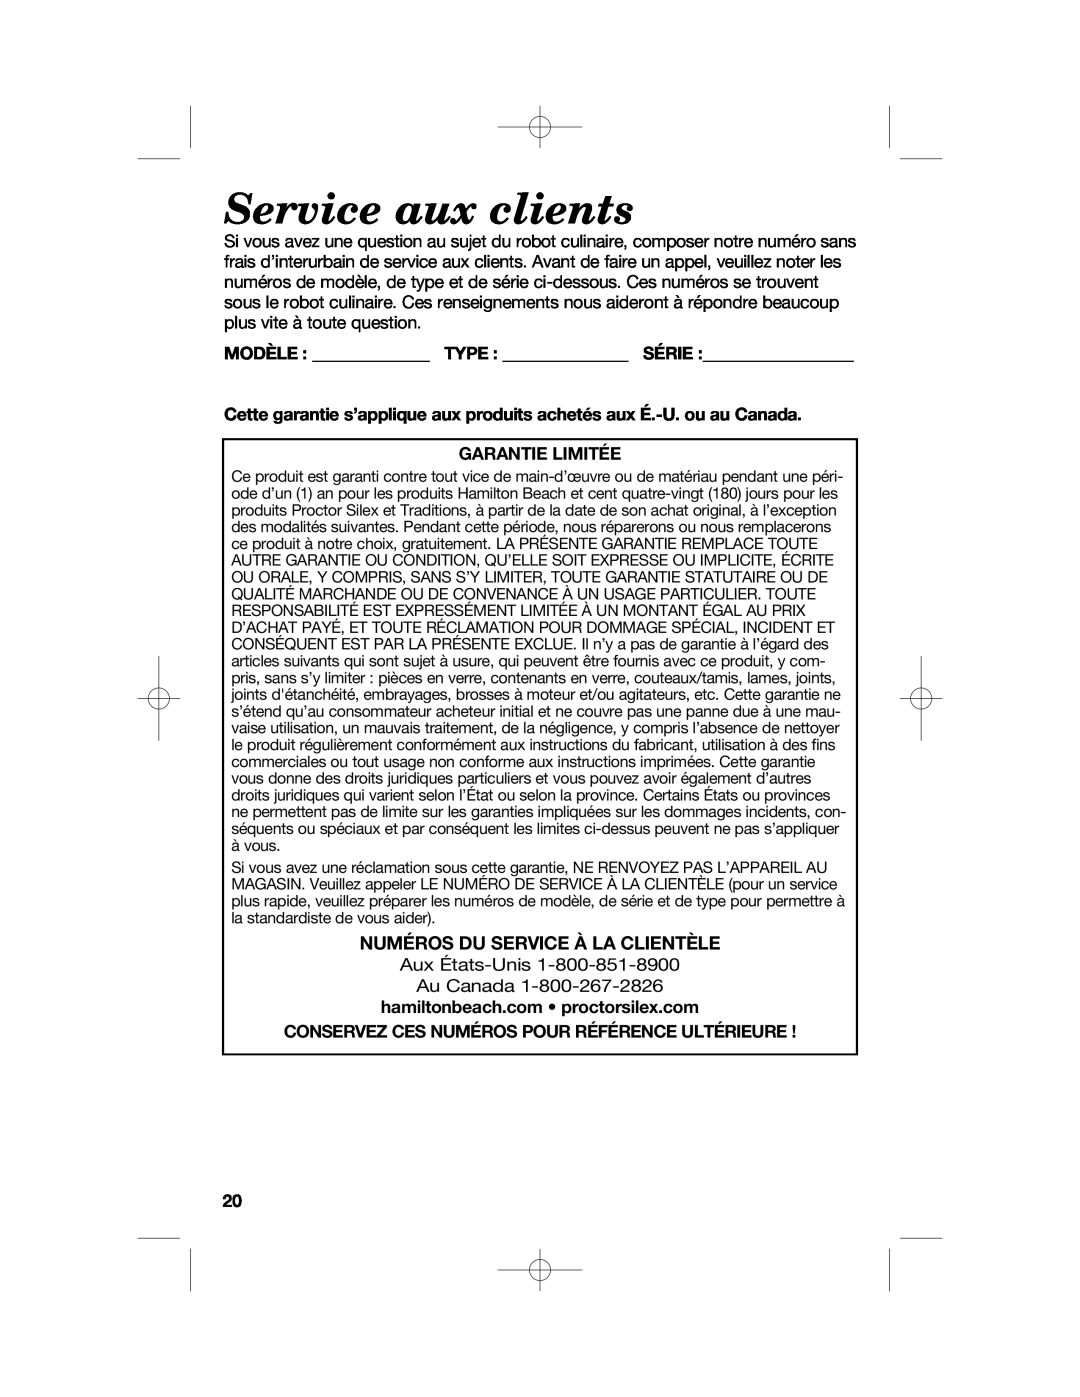 Hamilton Beach 70610, 70670 manual Service aux clients, Numéros Du Service À La Clientèle 